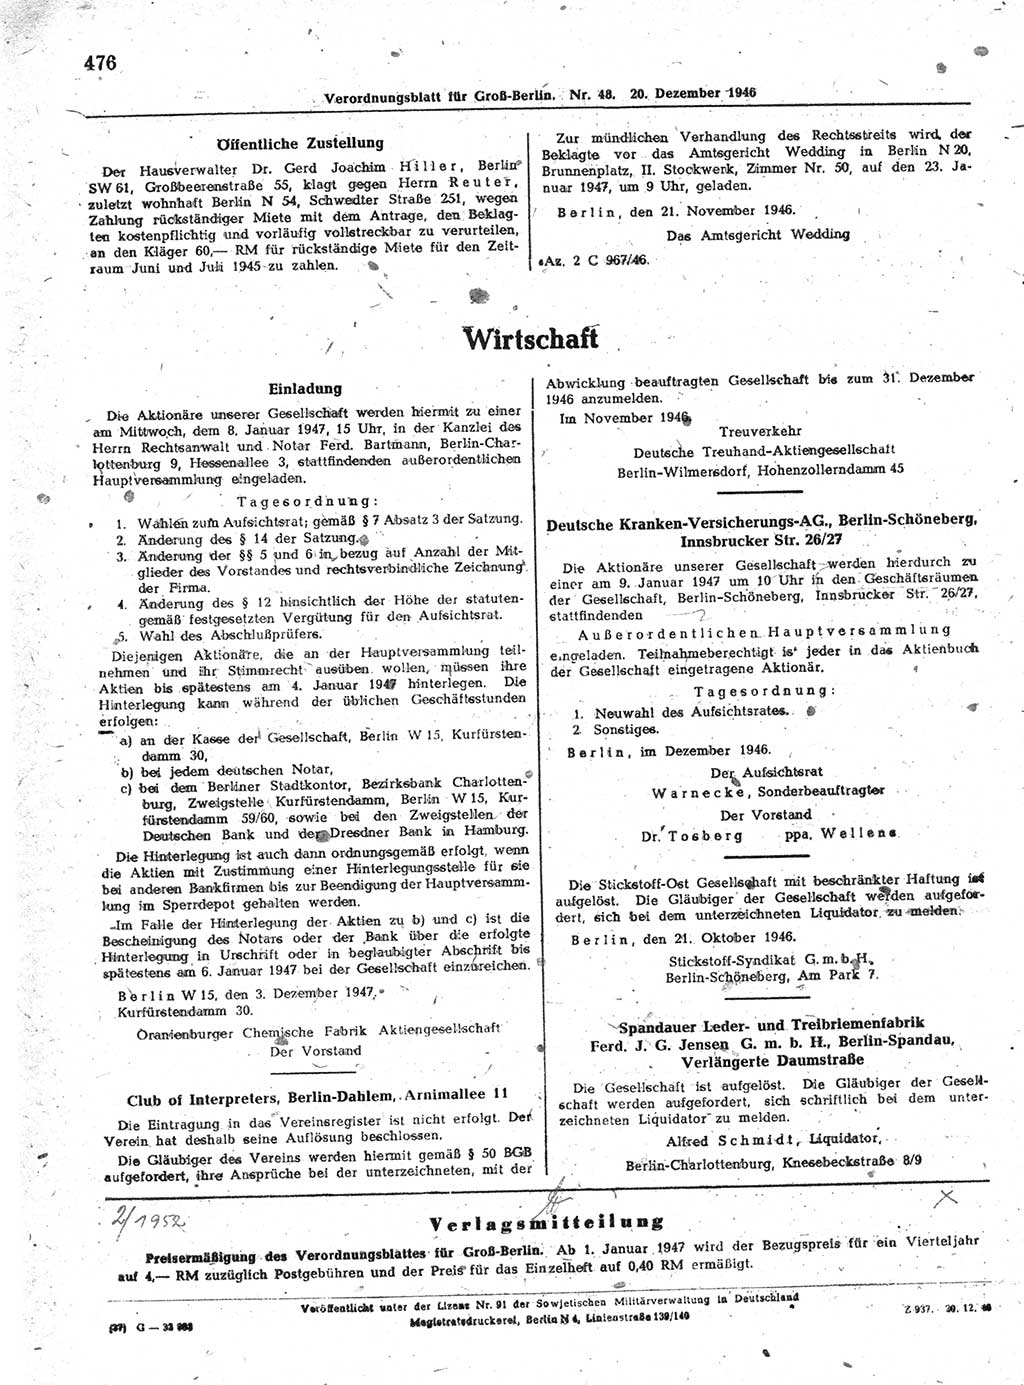 Verordnungsblatt (VOBl.) der Stadt Berlin, für Groß-Berlin 1946, Seite 476 (VOBl. Bln. 1946, S. 476)